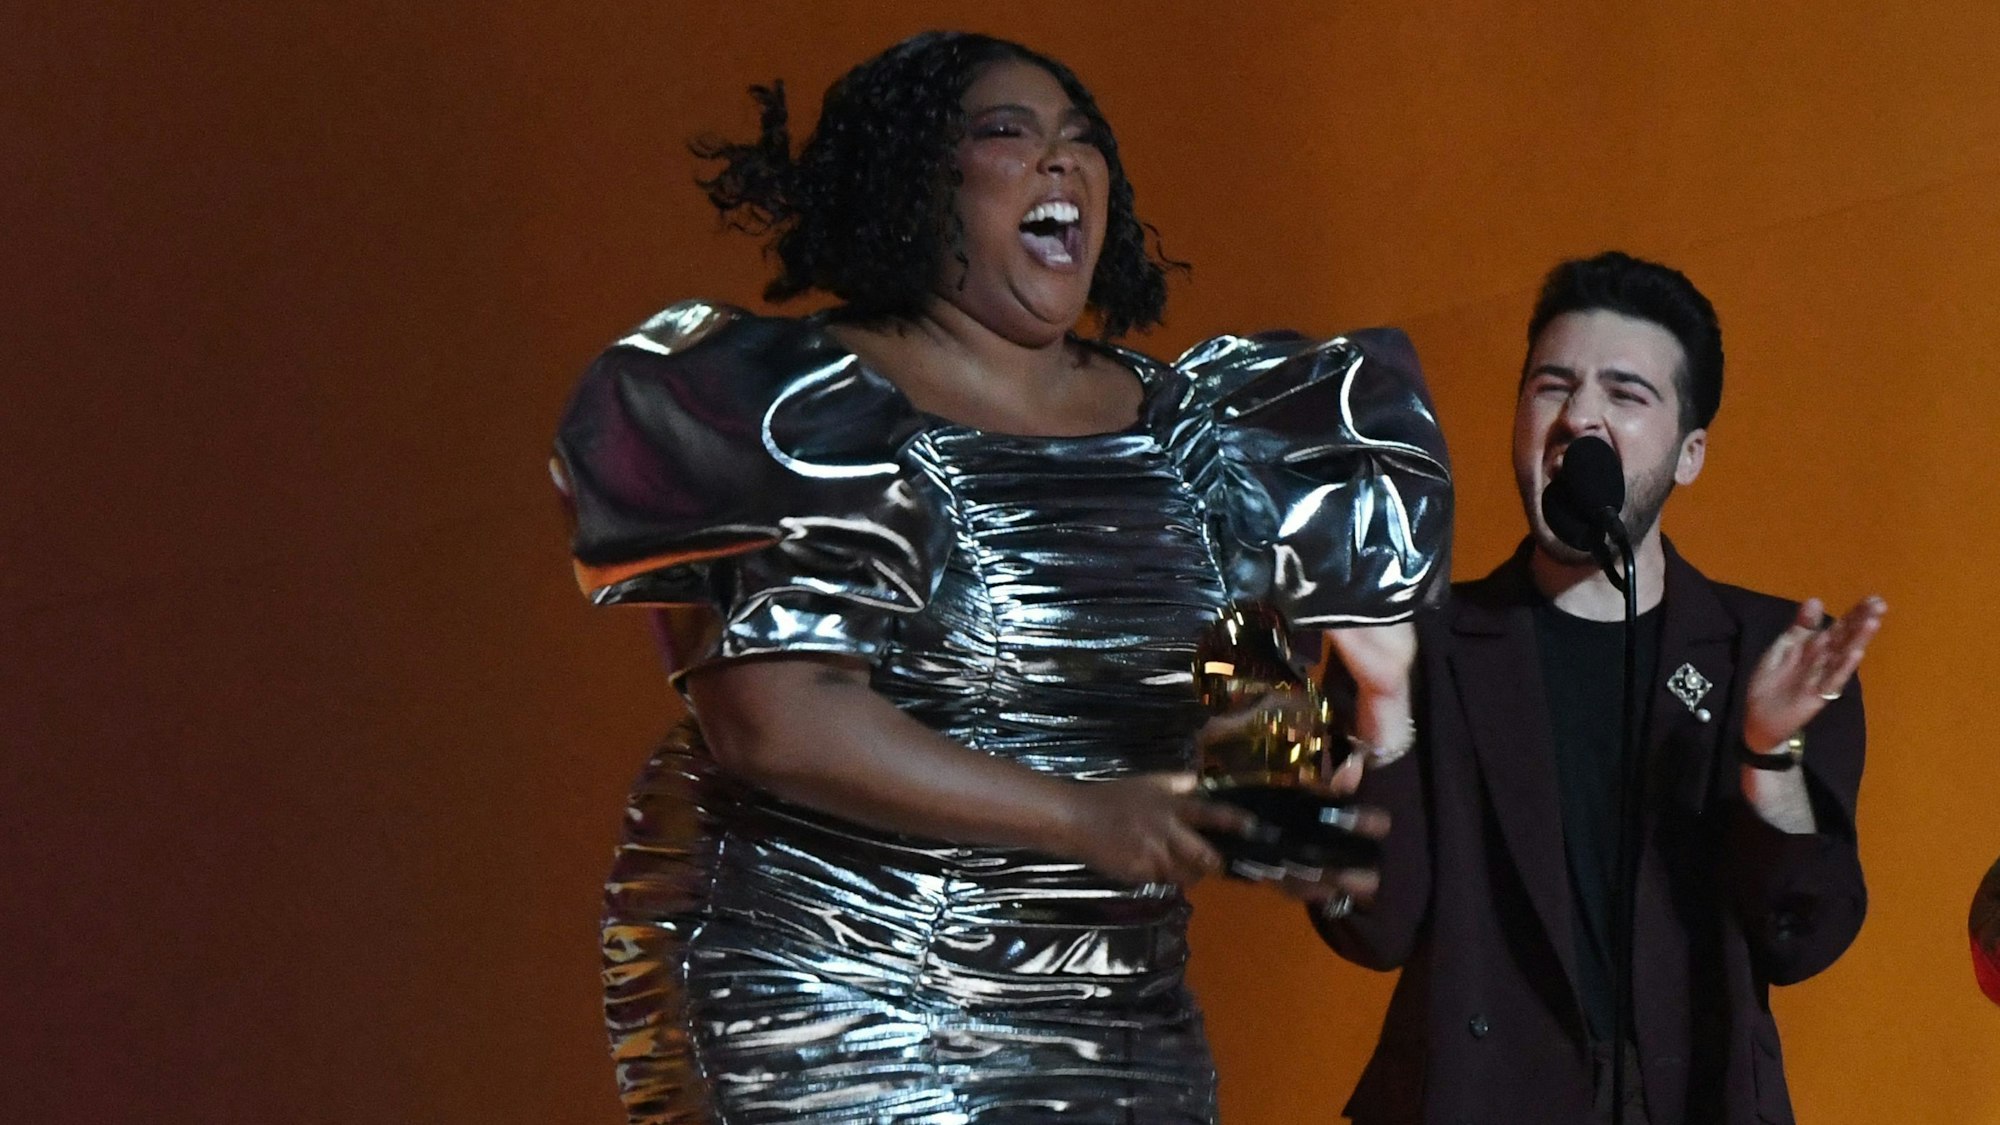 Lizzo hüpft im kurzen silbernen Kleid auf der Bühne der Grammy Awards in Los Angeles. In ihren Händen hält sie den Preis für die beste Aufnahme des Jahres.